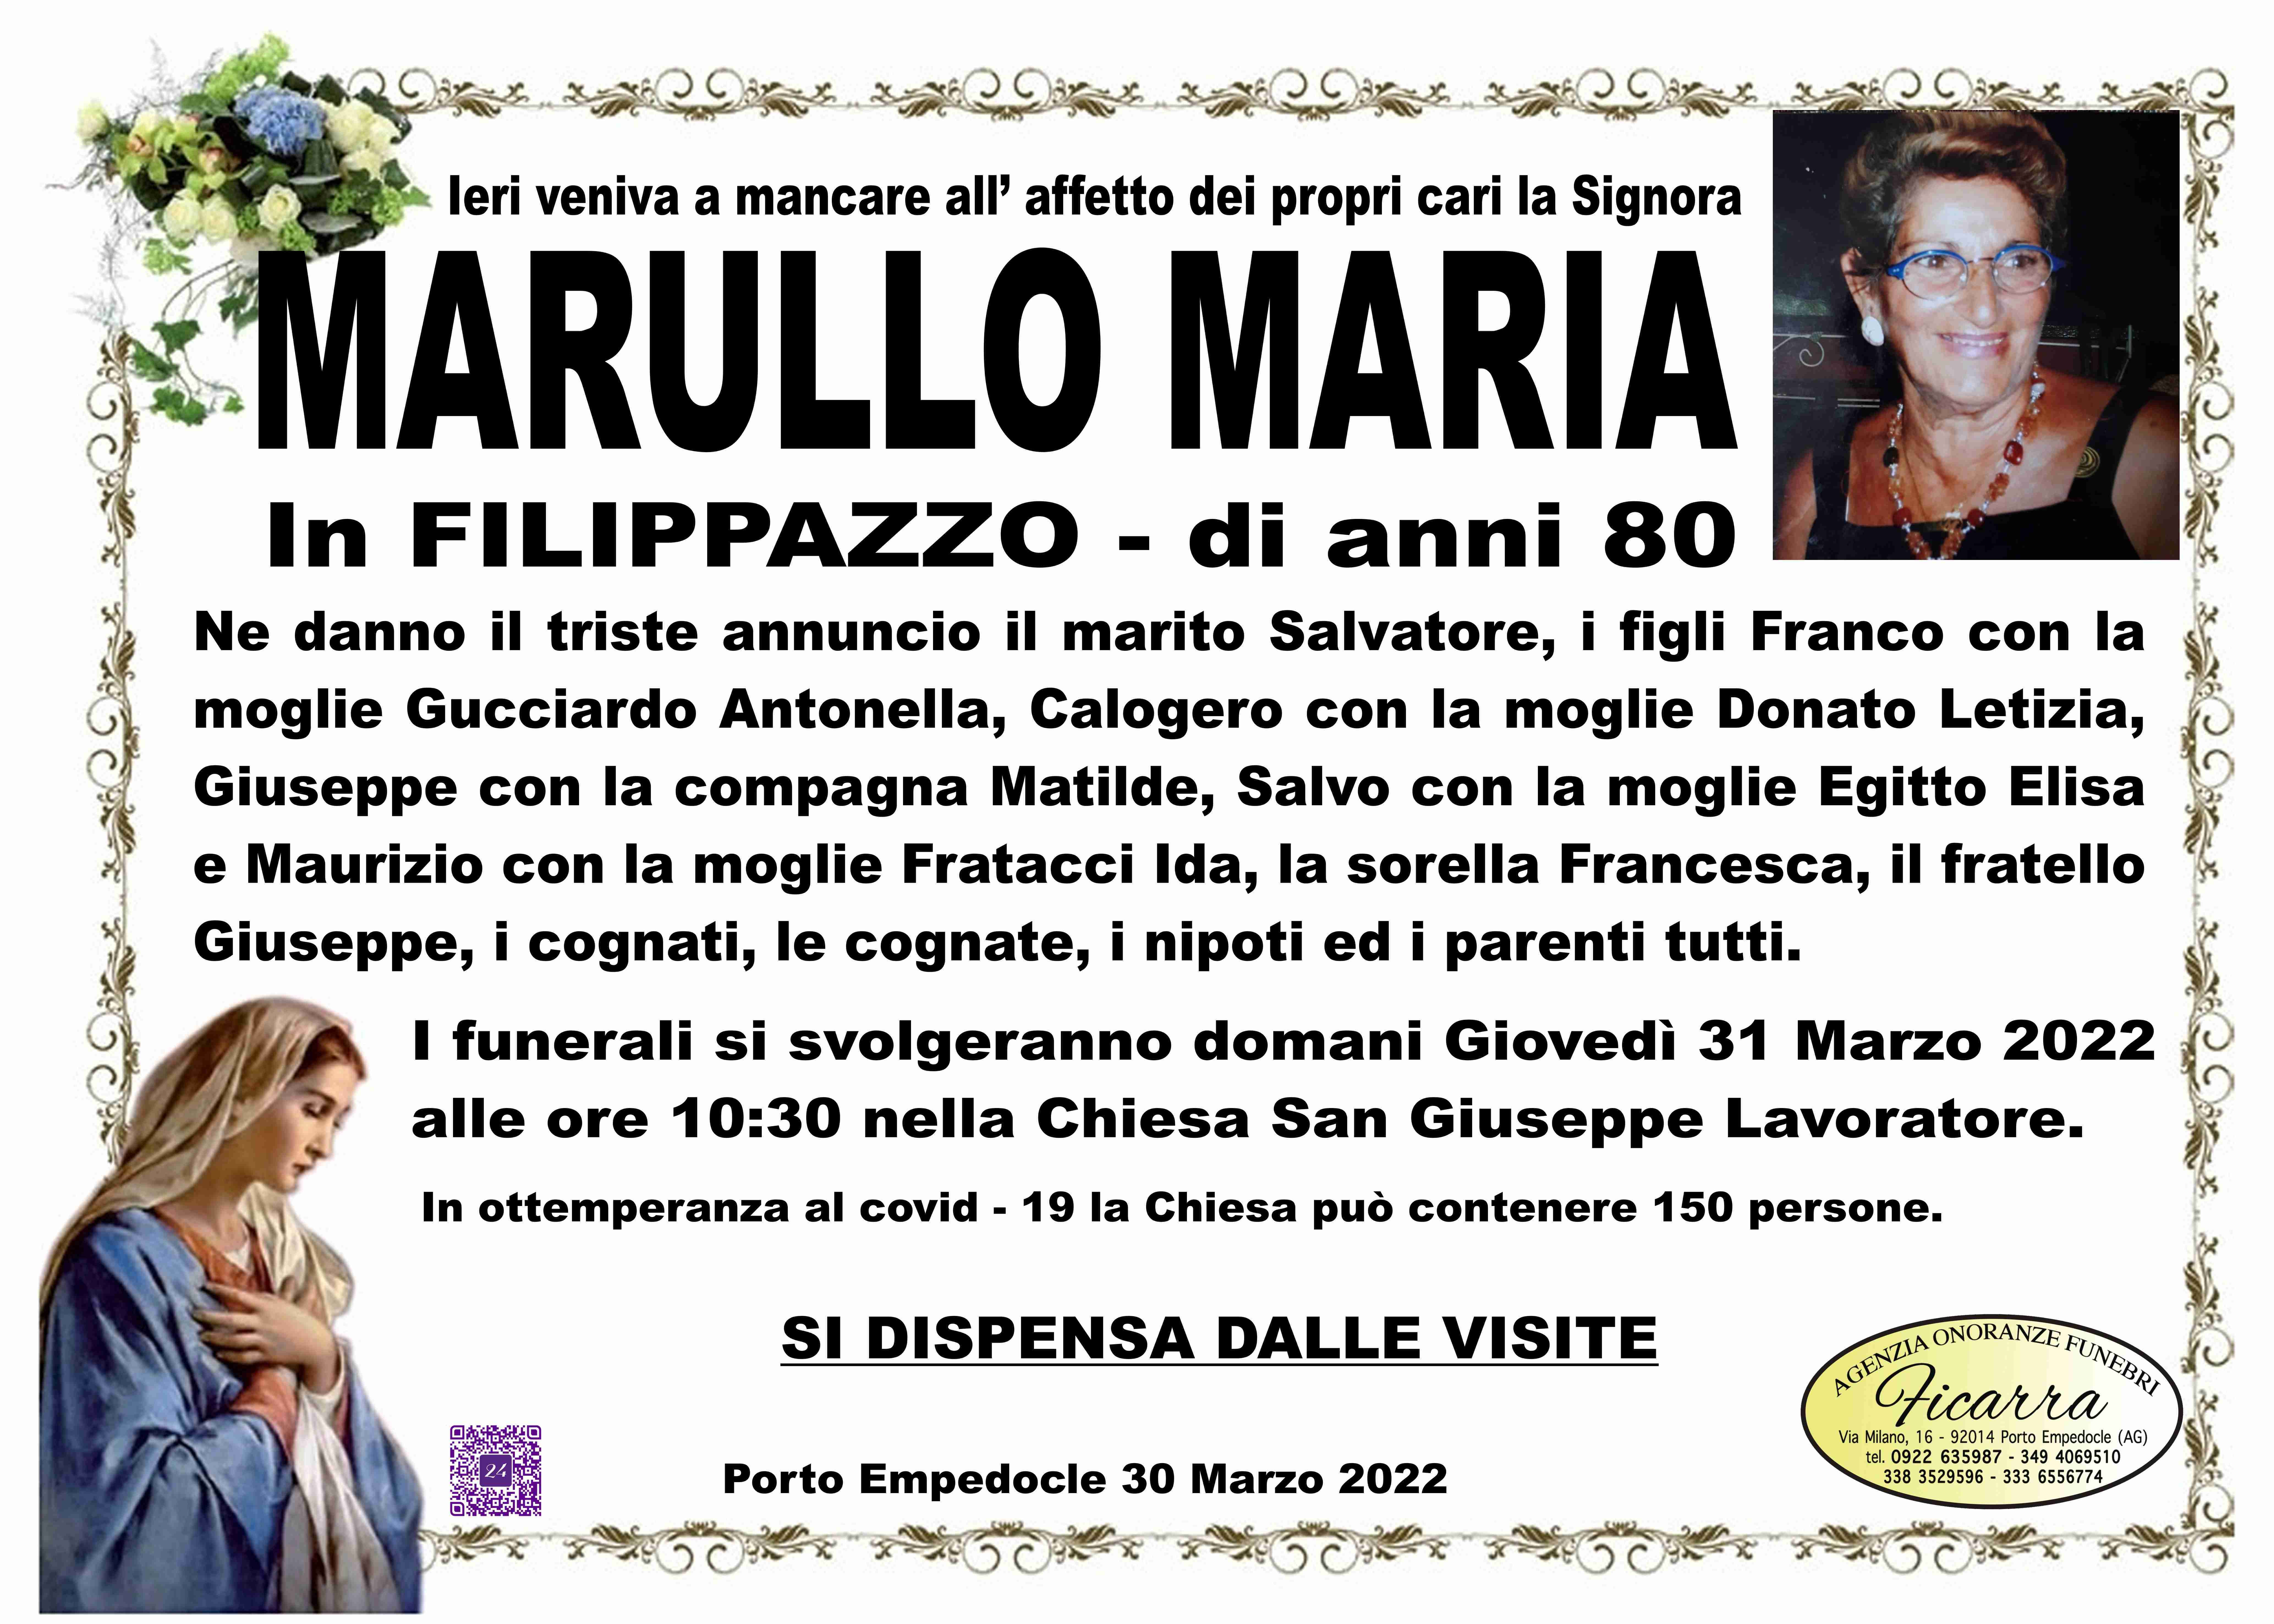 Maria Marullo